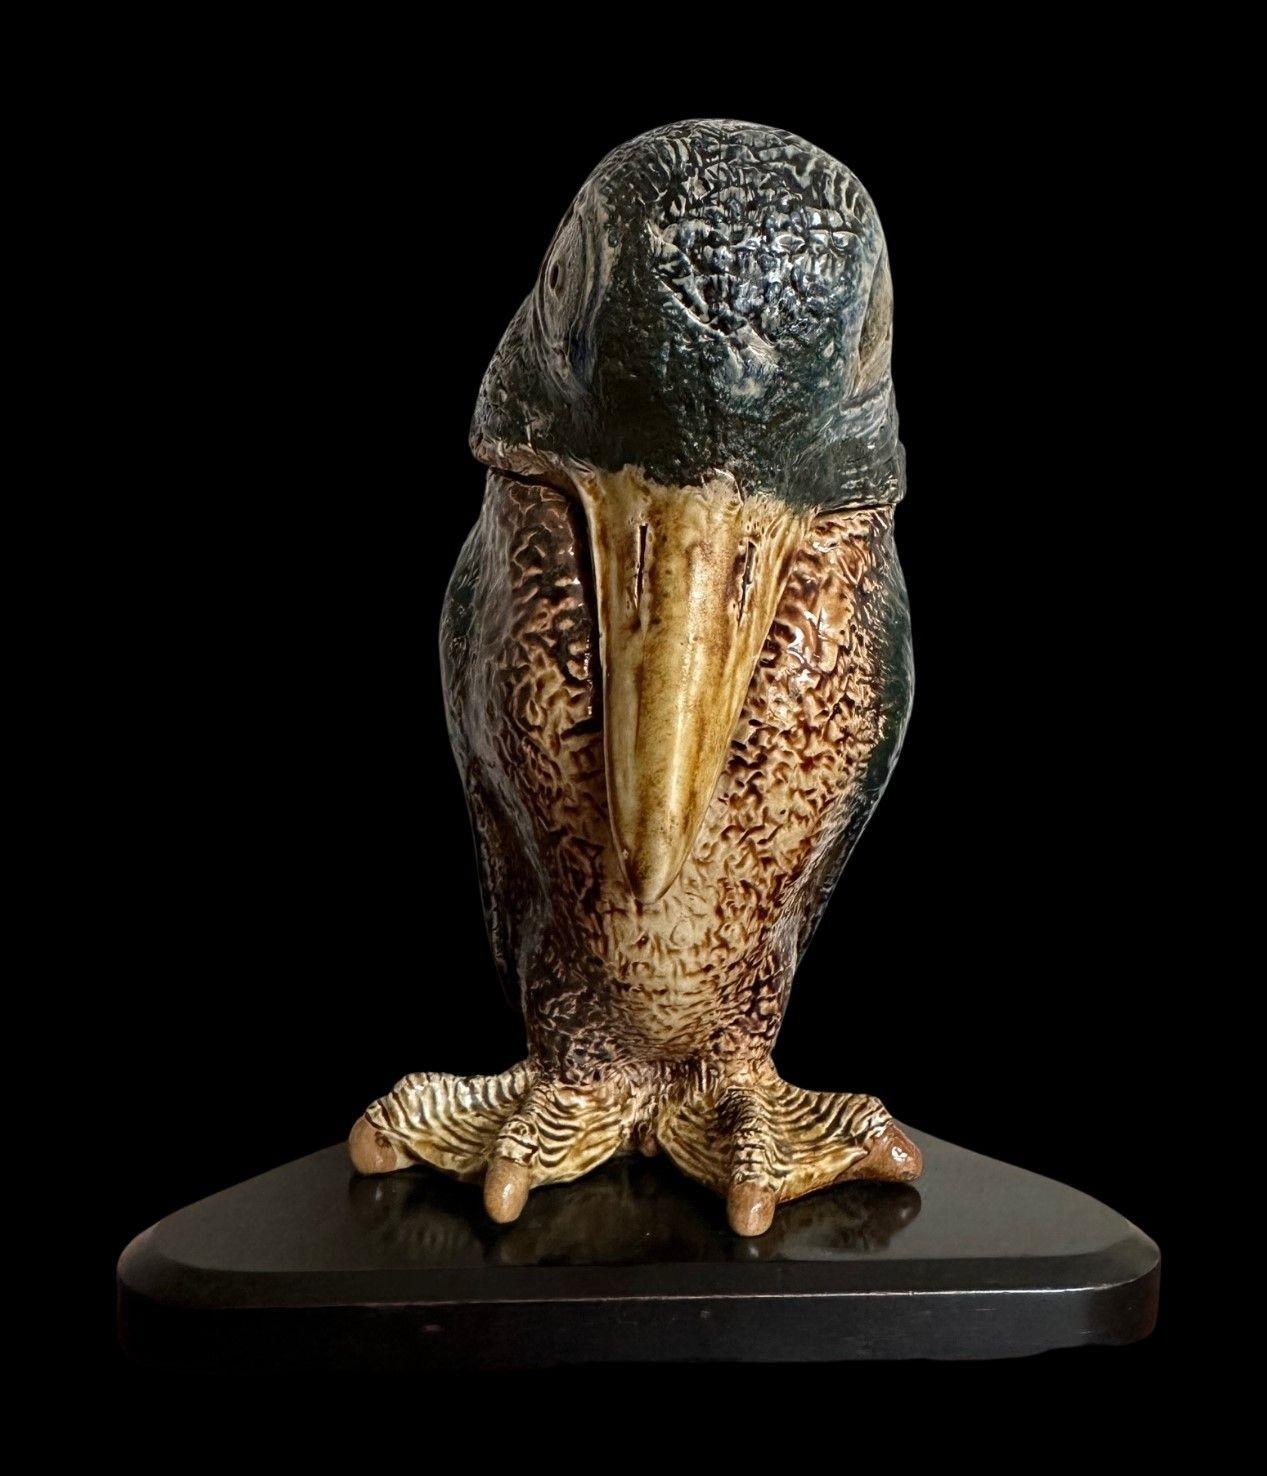 Robert Wallace Martin für die Gebrüder Martin.
Skulptur eines Vogelkindes aus Steingut mit Salzglasur.
Dekoriert mit einer Palette von Grün-, Braun- und Blautönen, mit Schwimmfüßen und einem schüchternen Ausdruck.
Es handelt sich um ein sehr